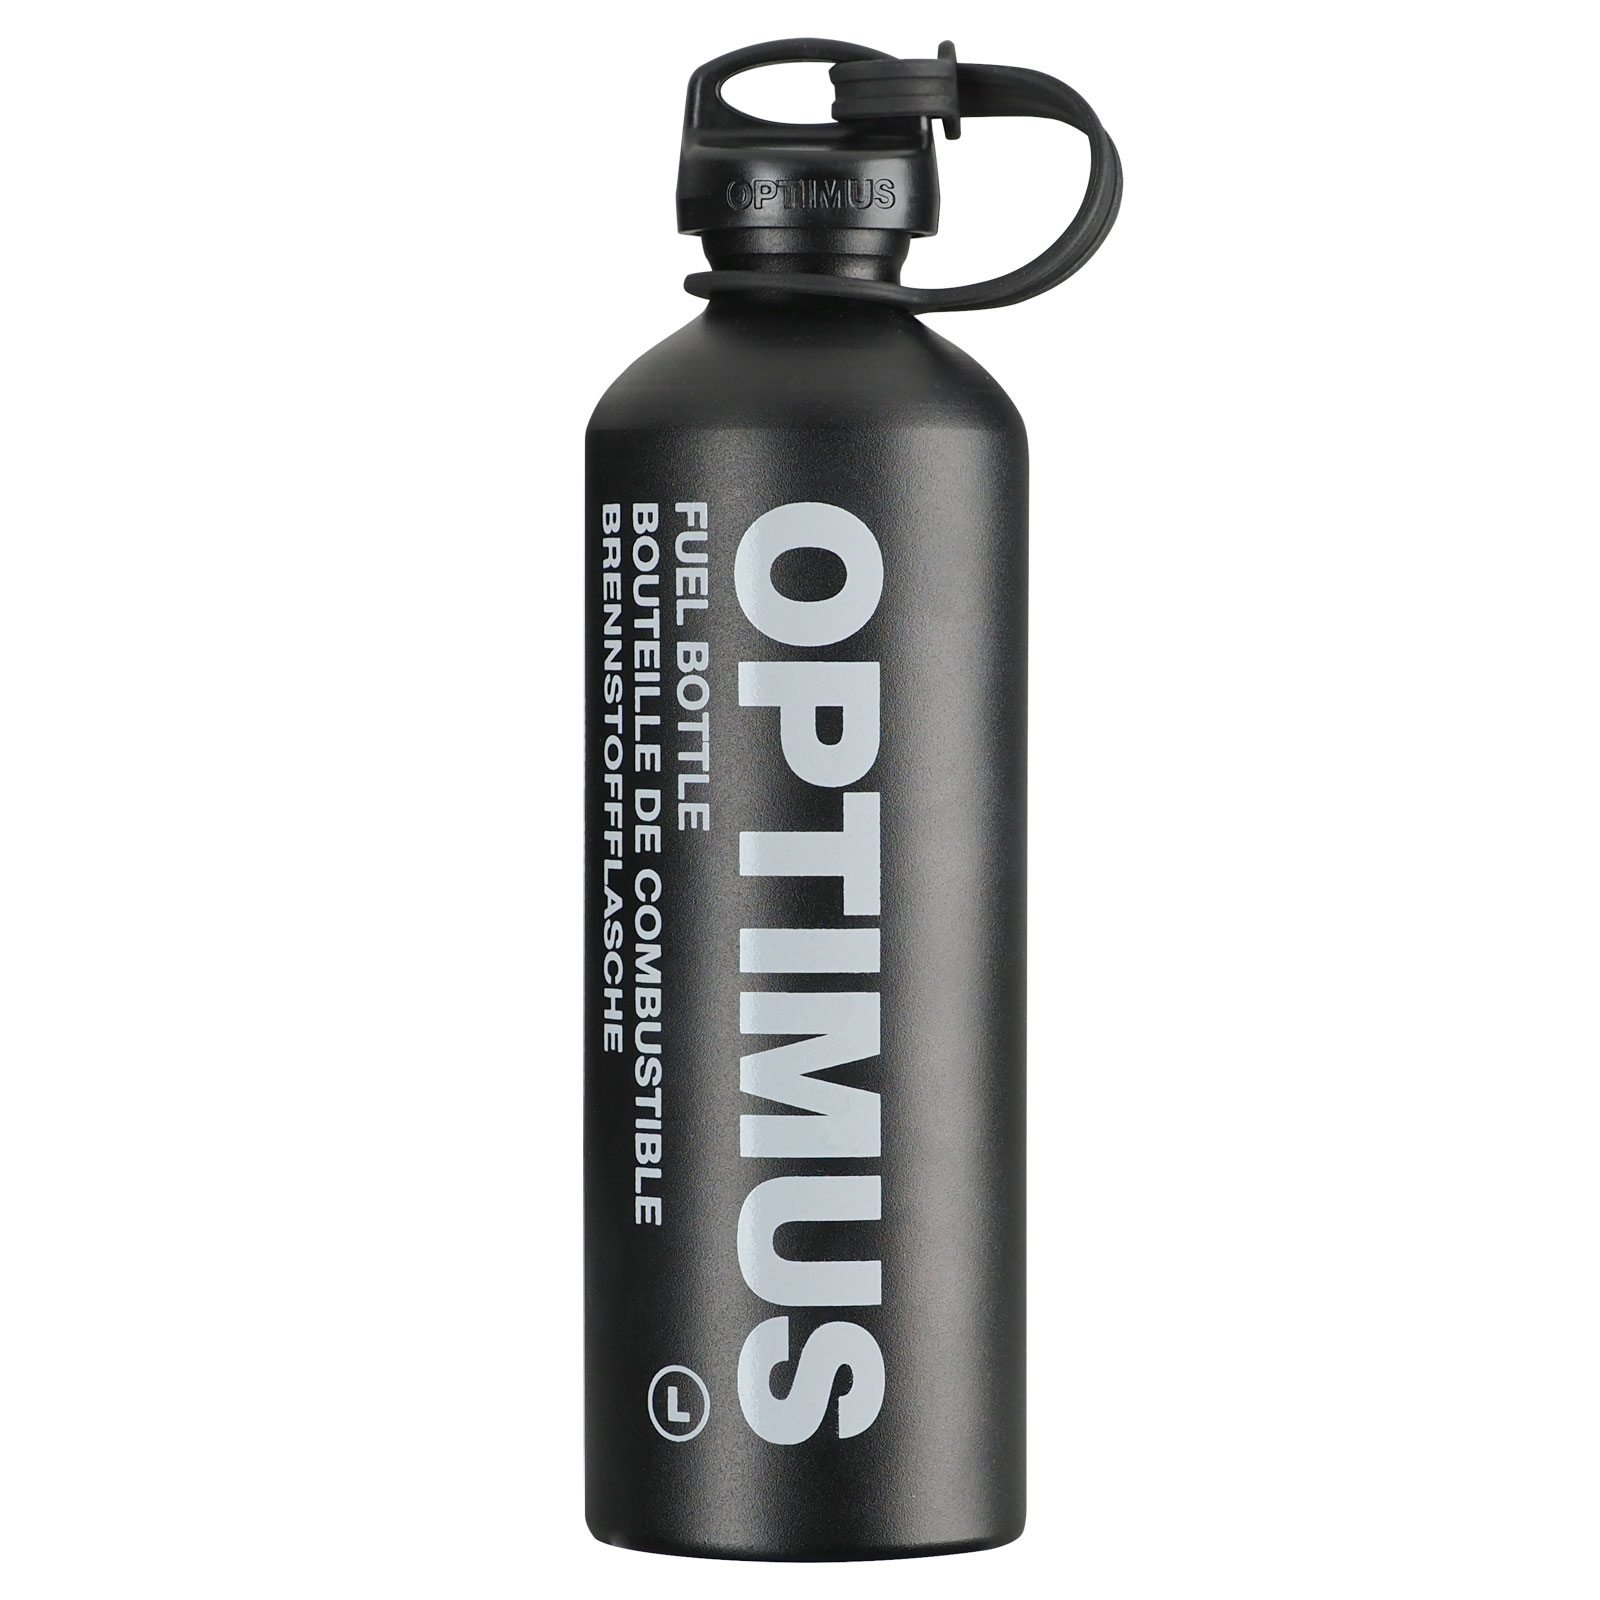 Produktbild von Optimus Brennstoffflasche L 1.0 L - black